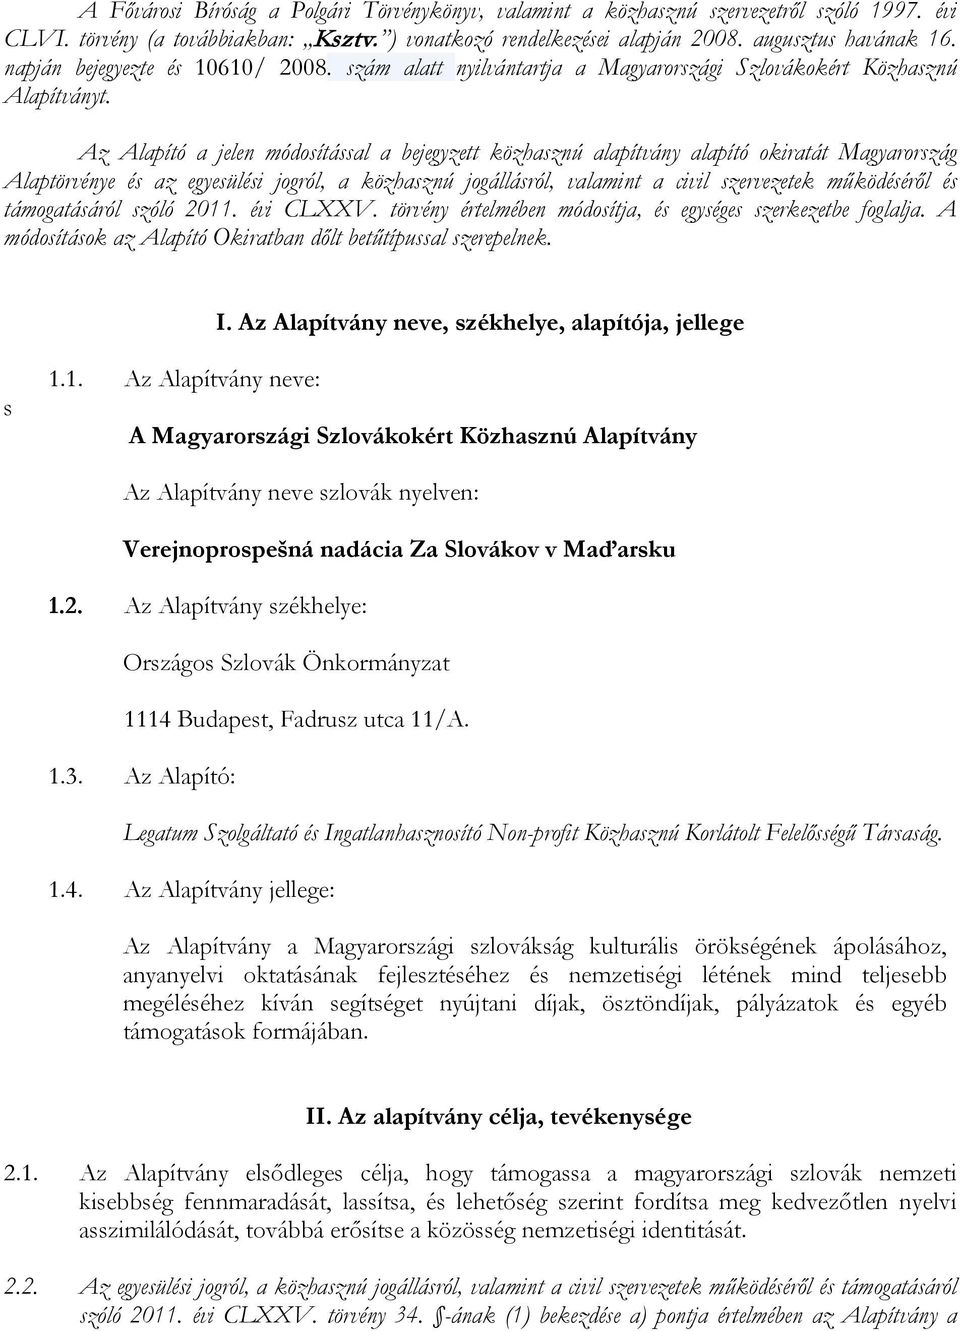 Az Alapító a jelen módosítással a bejegyzett közhasznú alapítvány alapító okiratát Magyarország Alaptörvénye és az egyesülési jogról, a közhasznú jogállásról, valamint a civil szervezetek működéséről